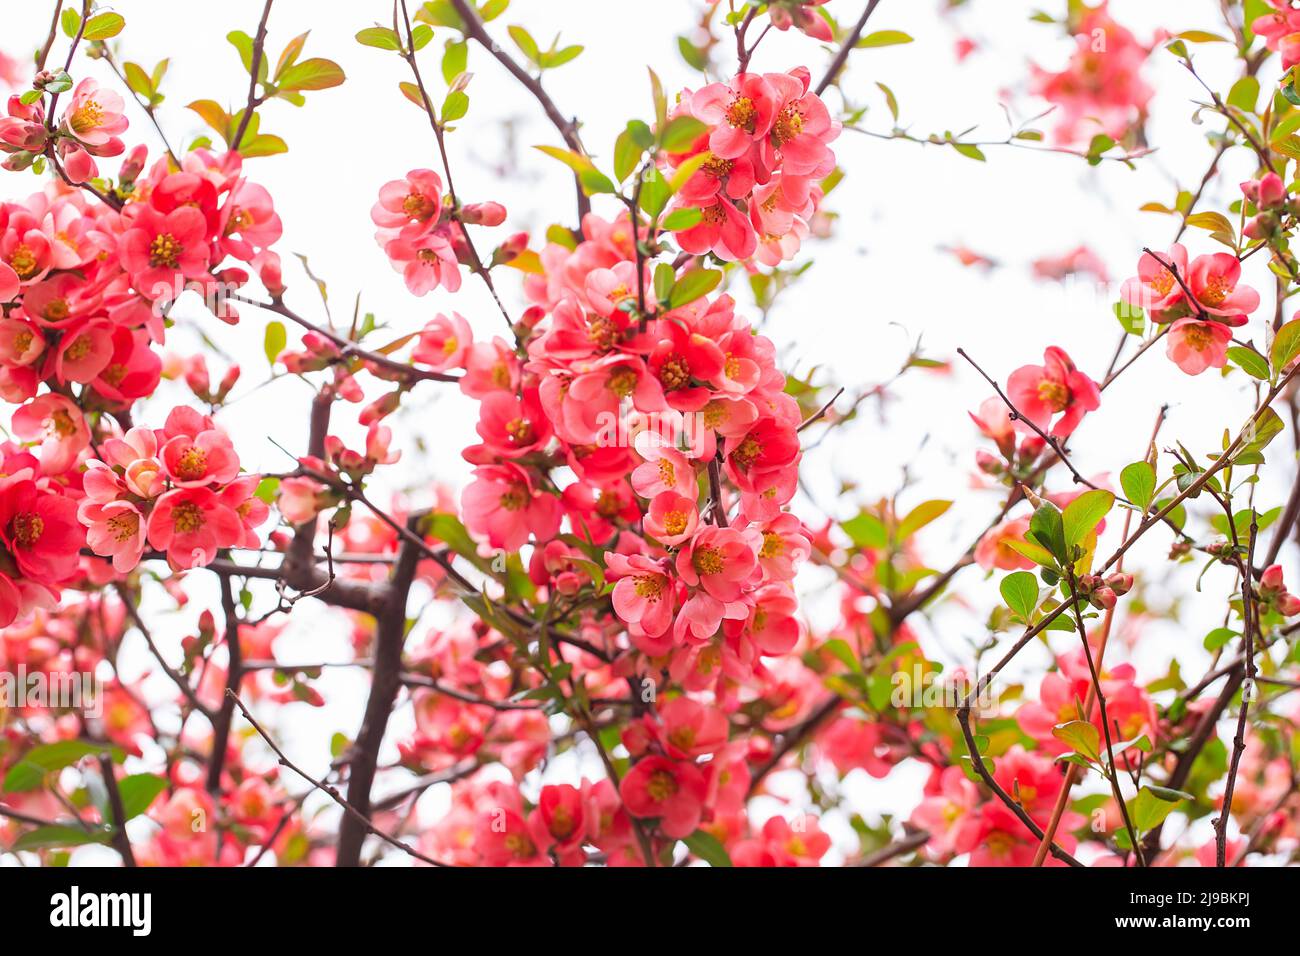 Leuchtend rote Blüten einer blühenden Quitte, Chaenomeles speciosa, Strauch. Ein dorniger Laub- oder halbimmergrüner Strauch, auch bekannt als japanische Quitte oder Chi Stockfoto